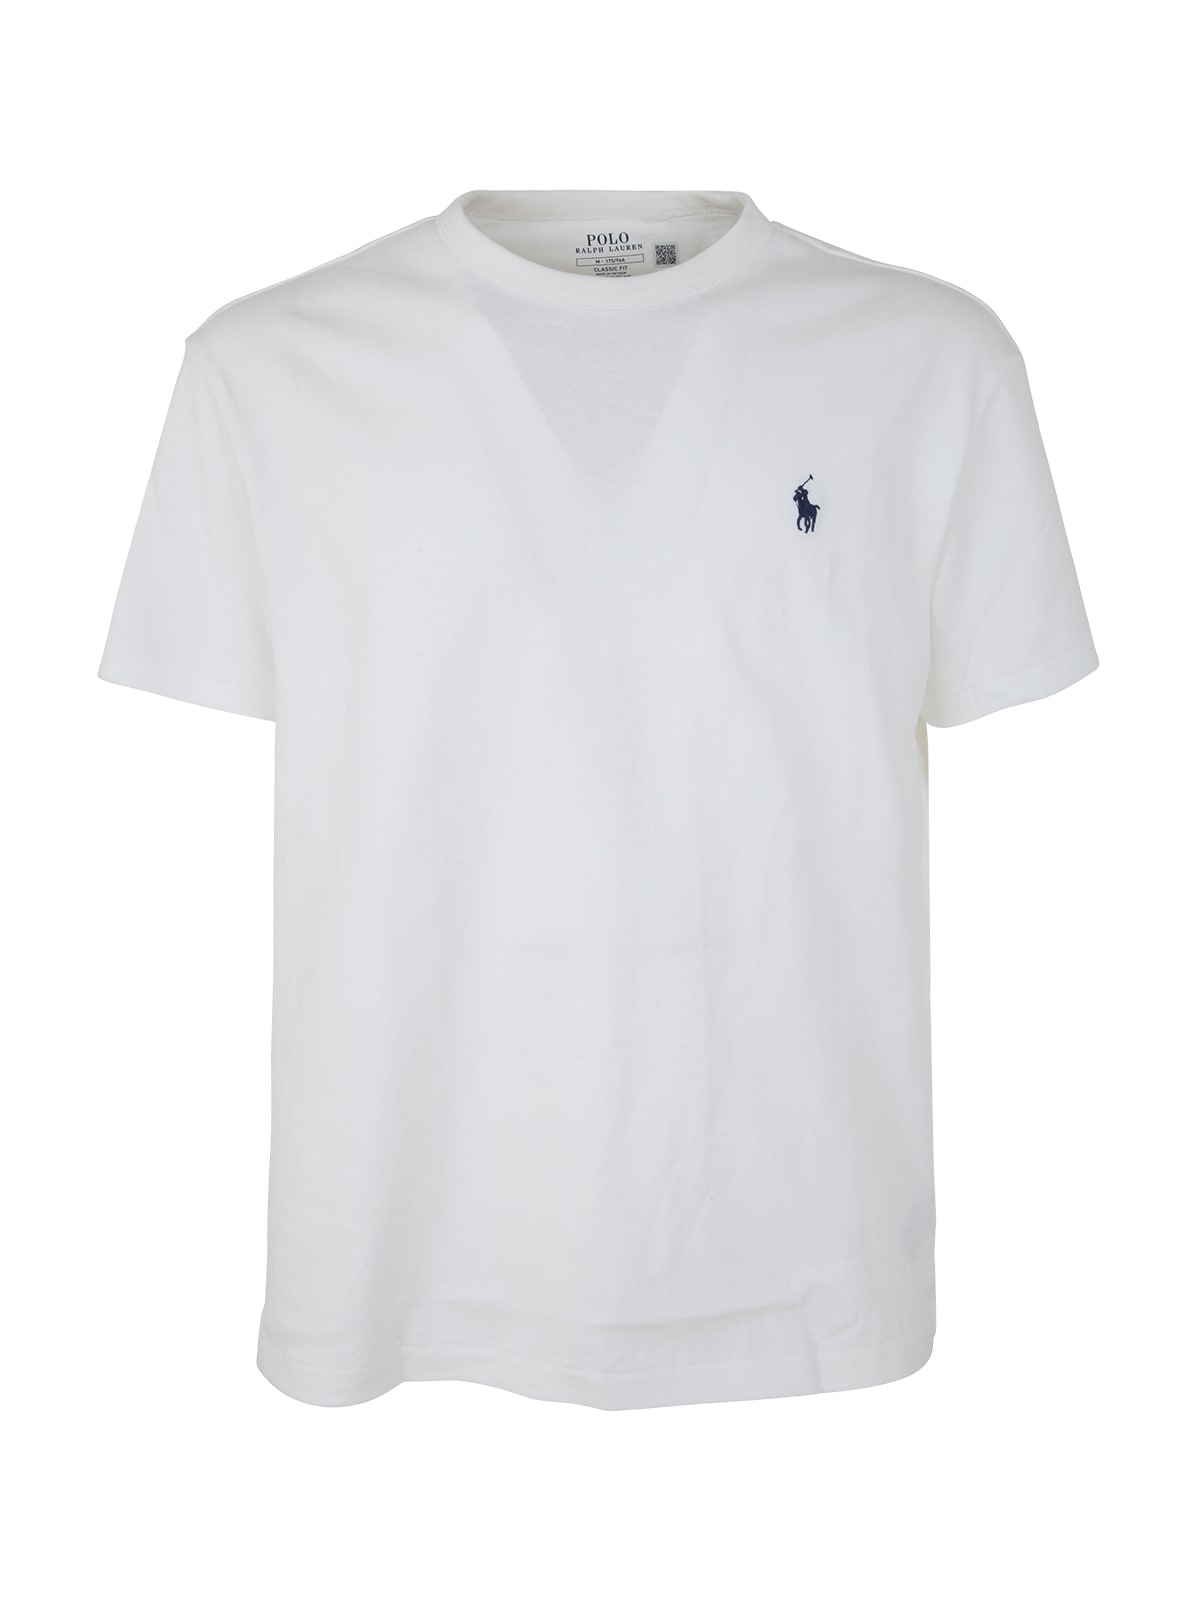 Shop Polo Ralph Lauren Sscnclsm1 Short Sleeve T Shirt